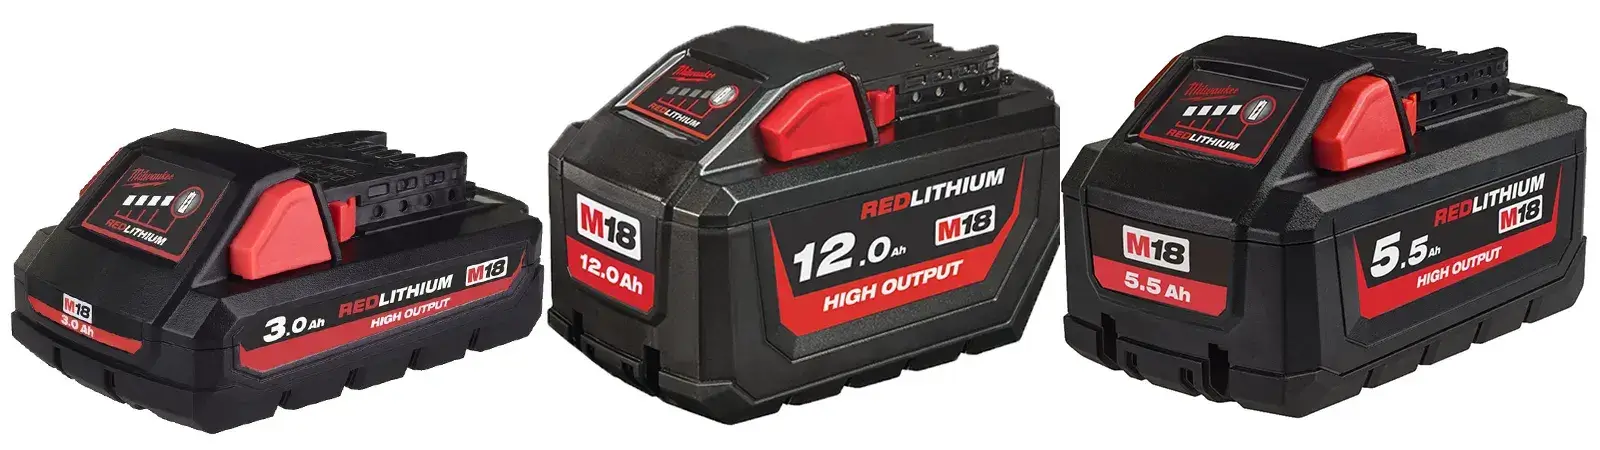 Milwaukee High Output Batteries